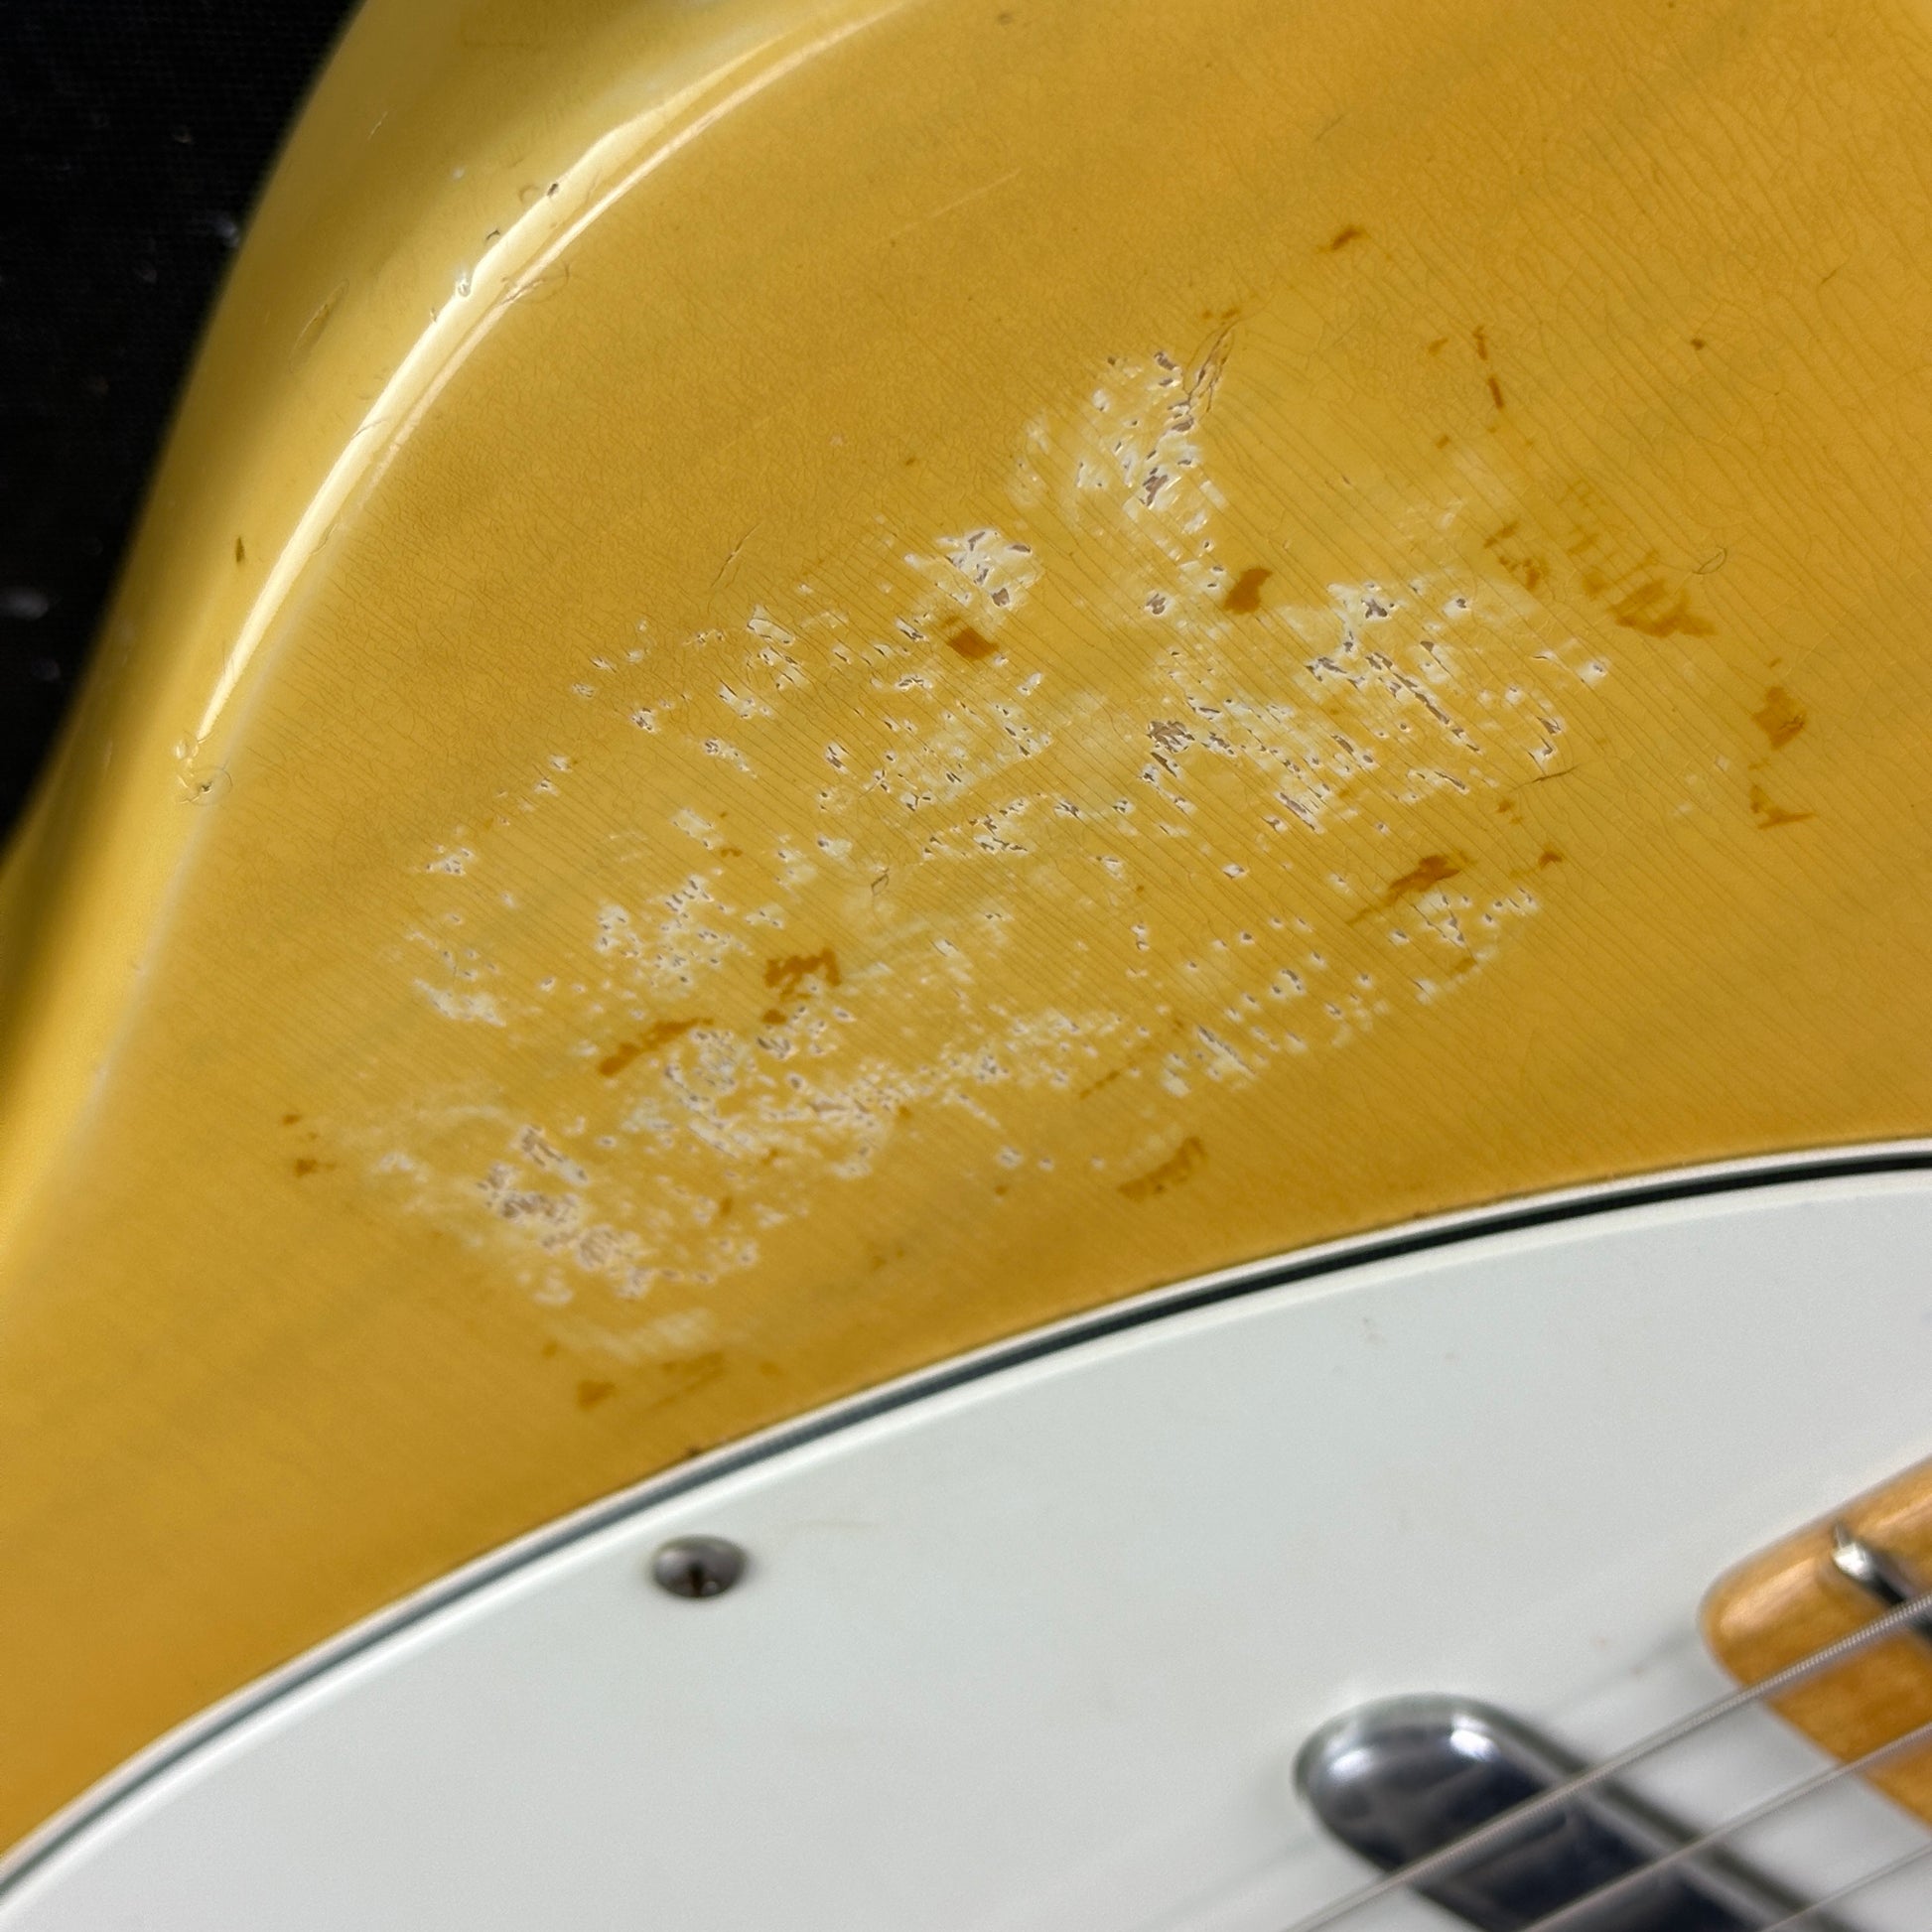 Damage near pickguard of Vintage 1974 Fender Telecaster.